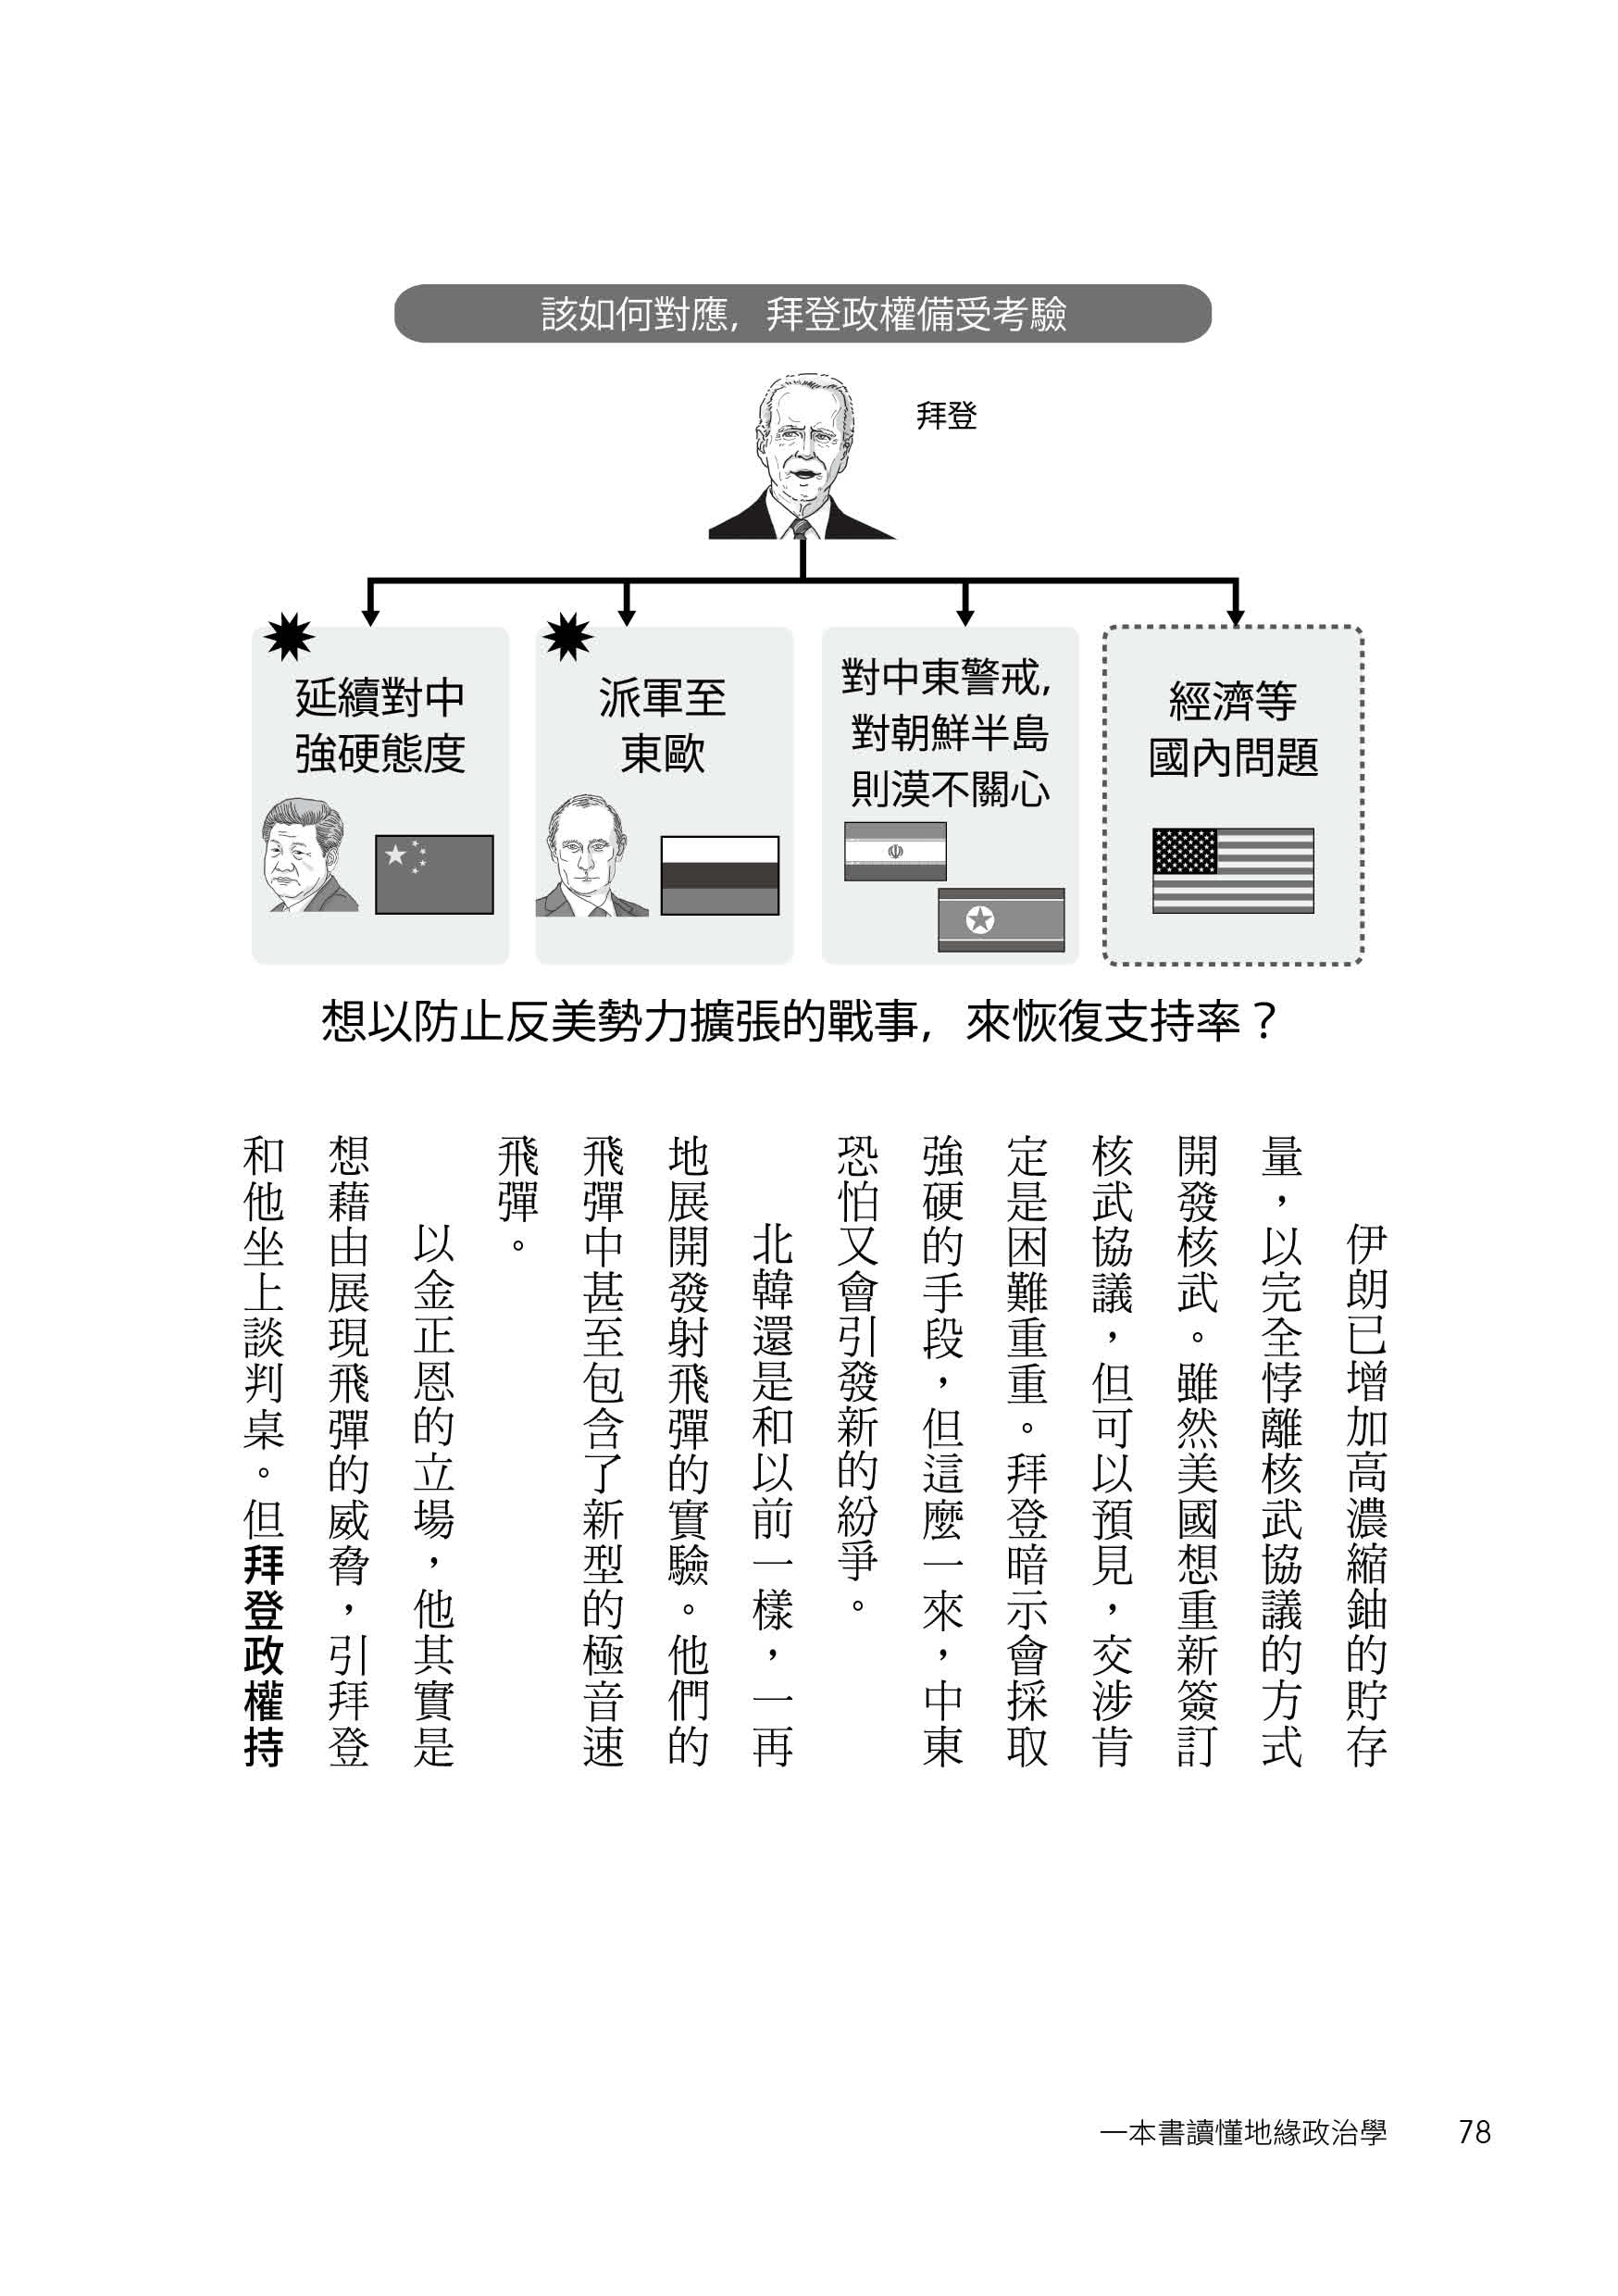 一本書讀懂地緣政治學：台灣面臨中國空前威脅？烏俄戰爭為何無法結束？50張國際形勢圖解╳零基礎淺顯解說